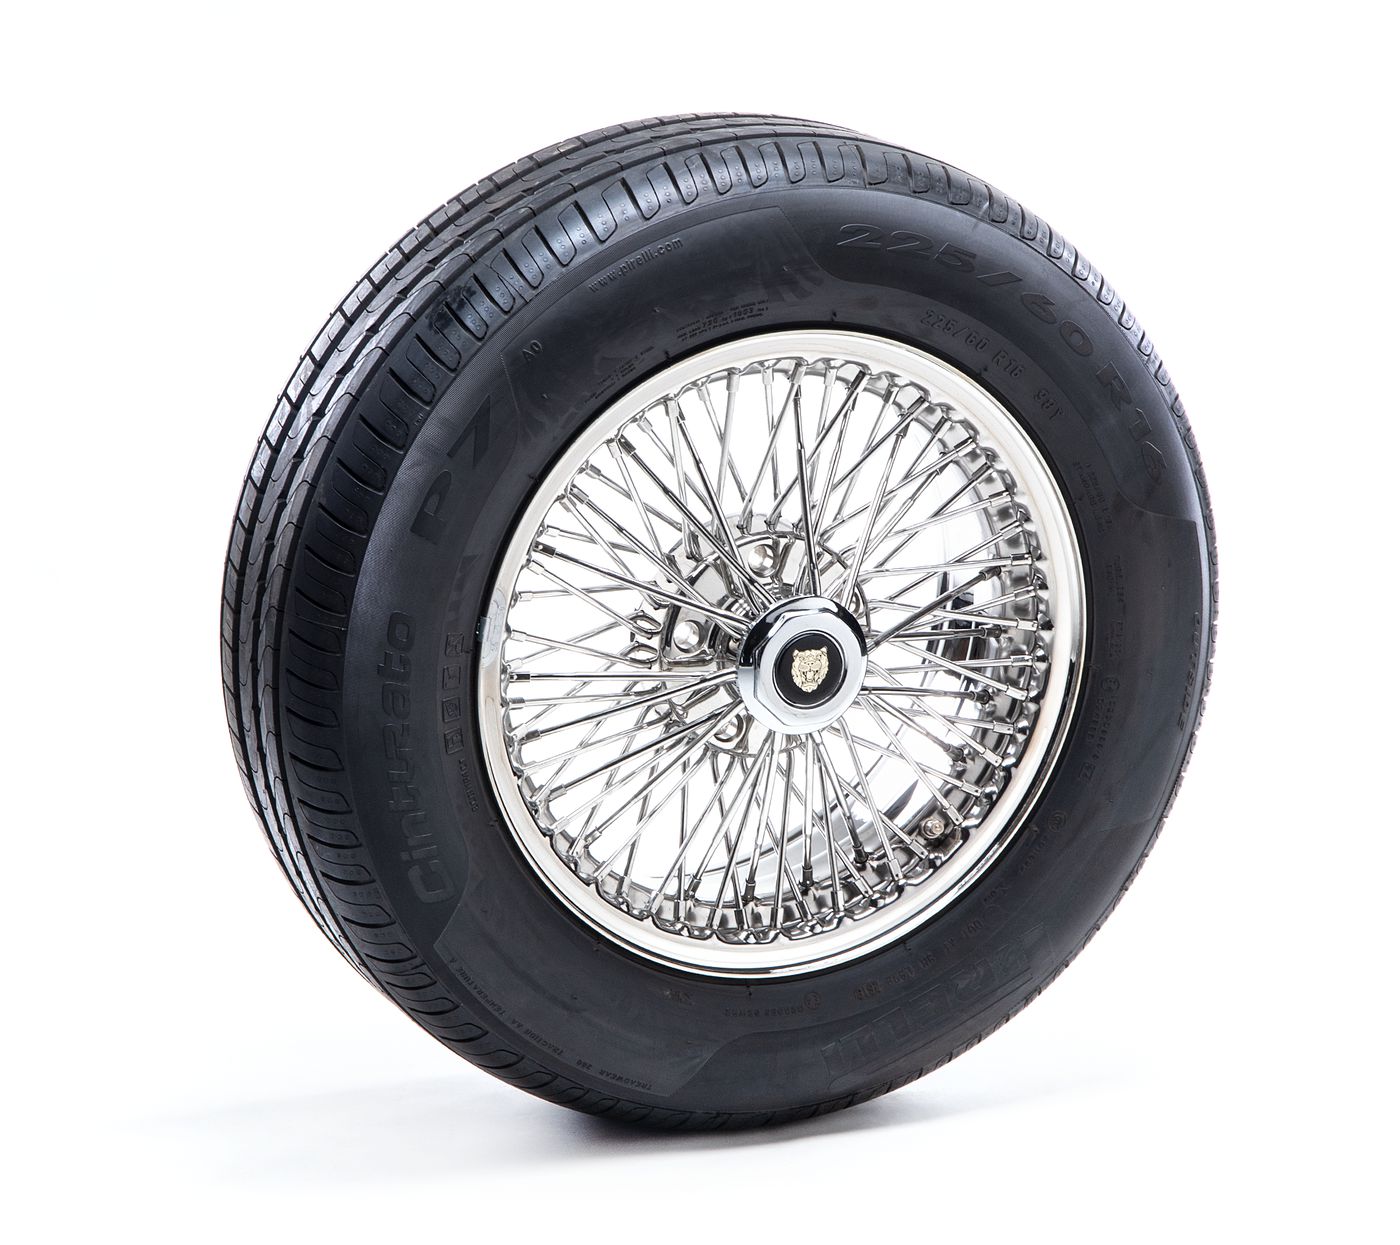 Komplettrad
Wheel package
Roue complète
Volledig wiel
Rueda com